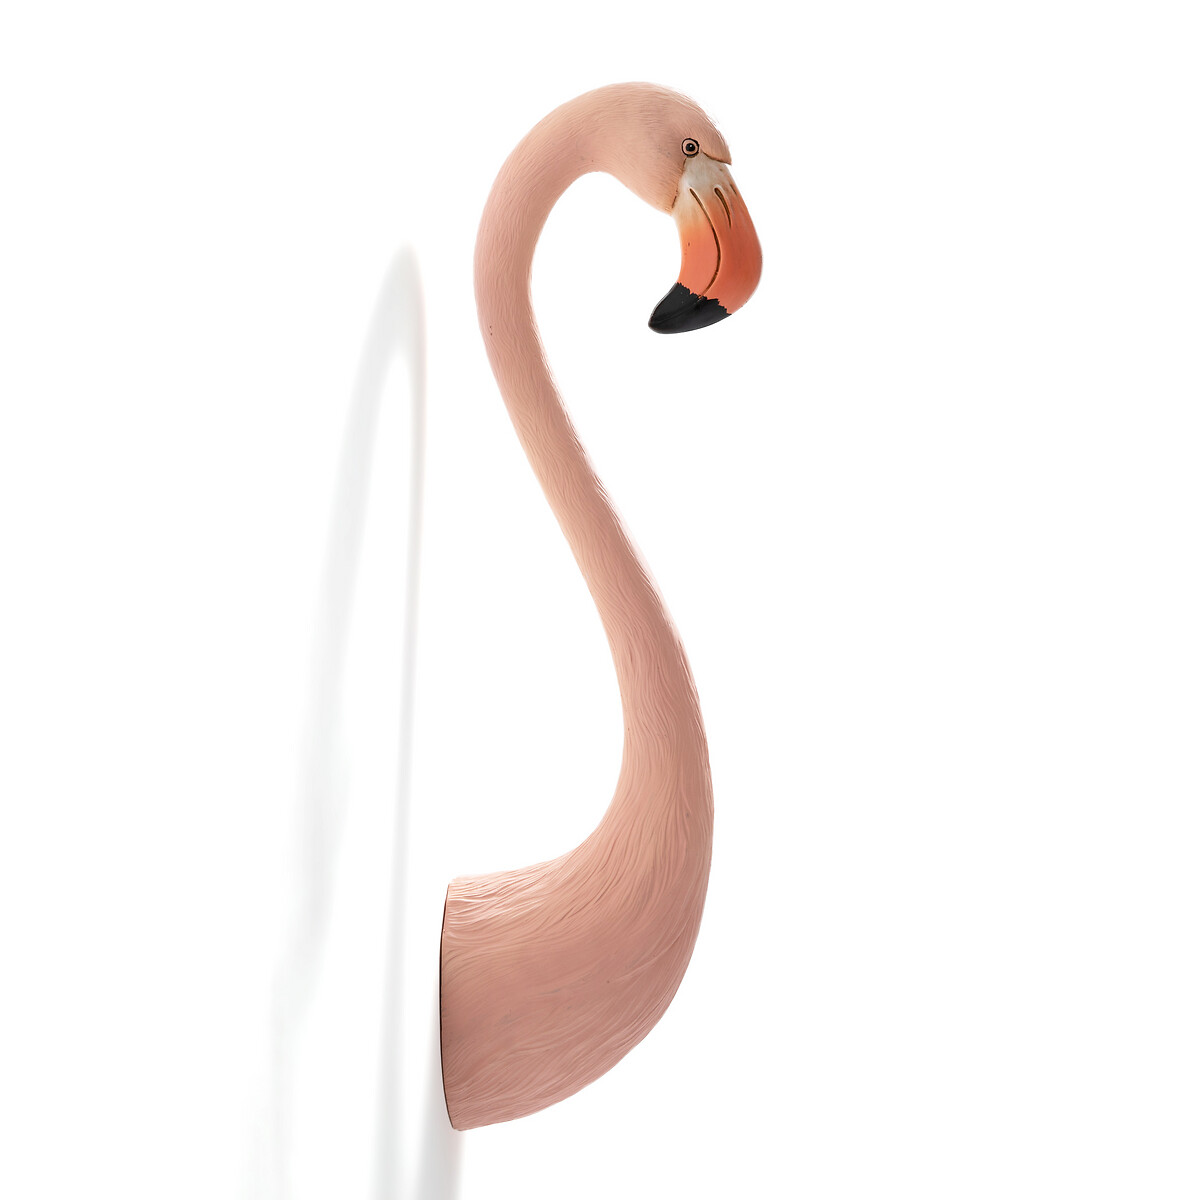 Голова La Redoute Розового фламинго из пластика В60 см Hector единый размер розовый - фото 3